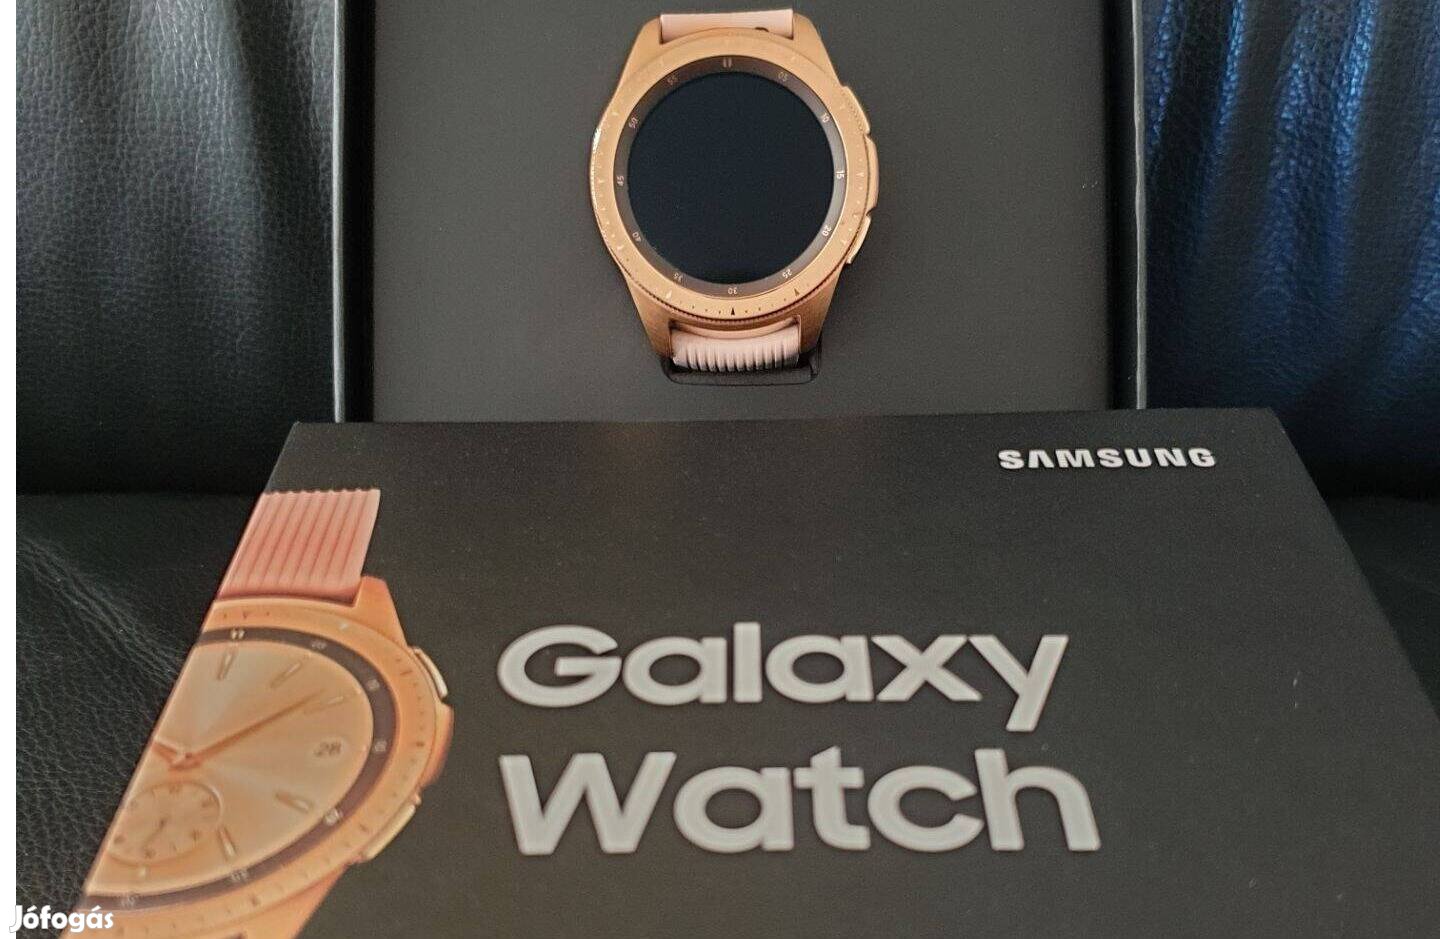 Samsung Galaxy Watch 42mm rosegold